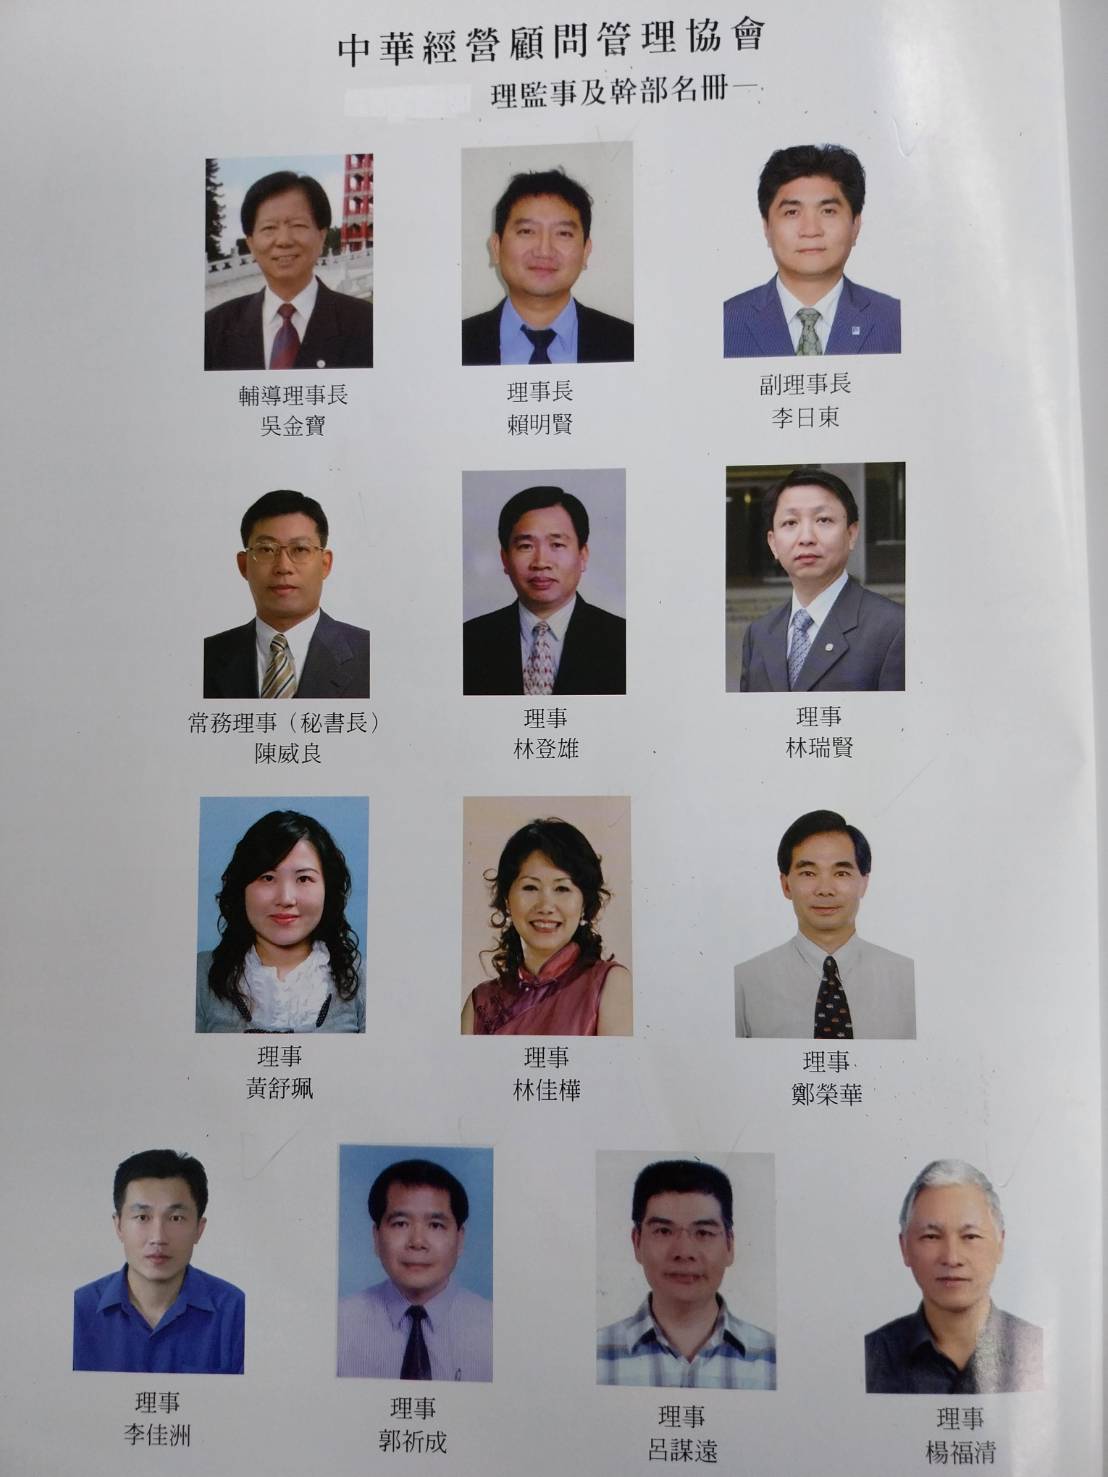  中華經營管理顧問協會(地方創生委員會)